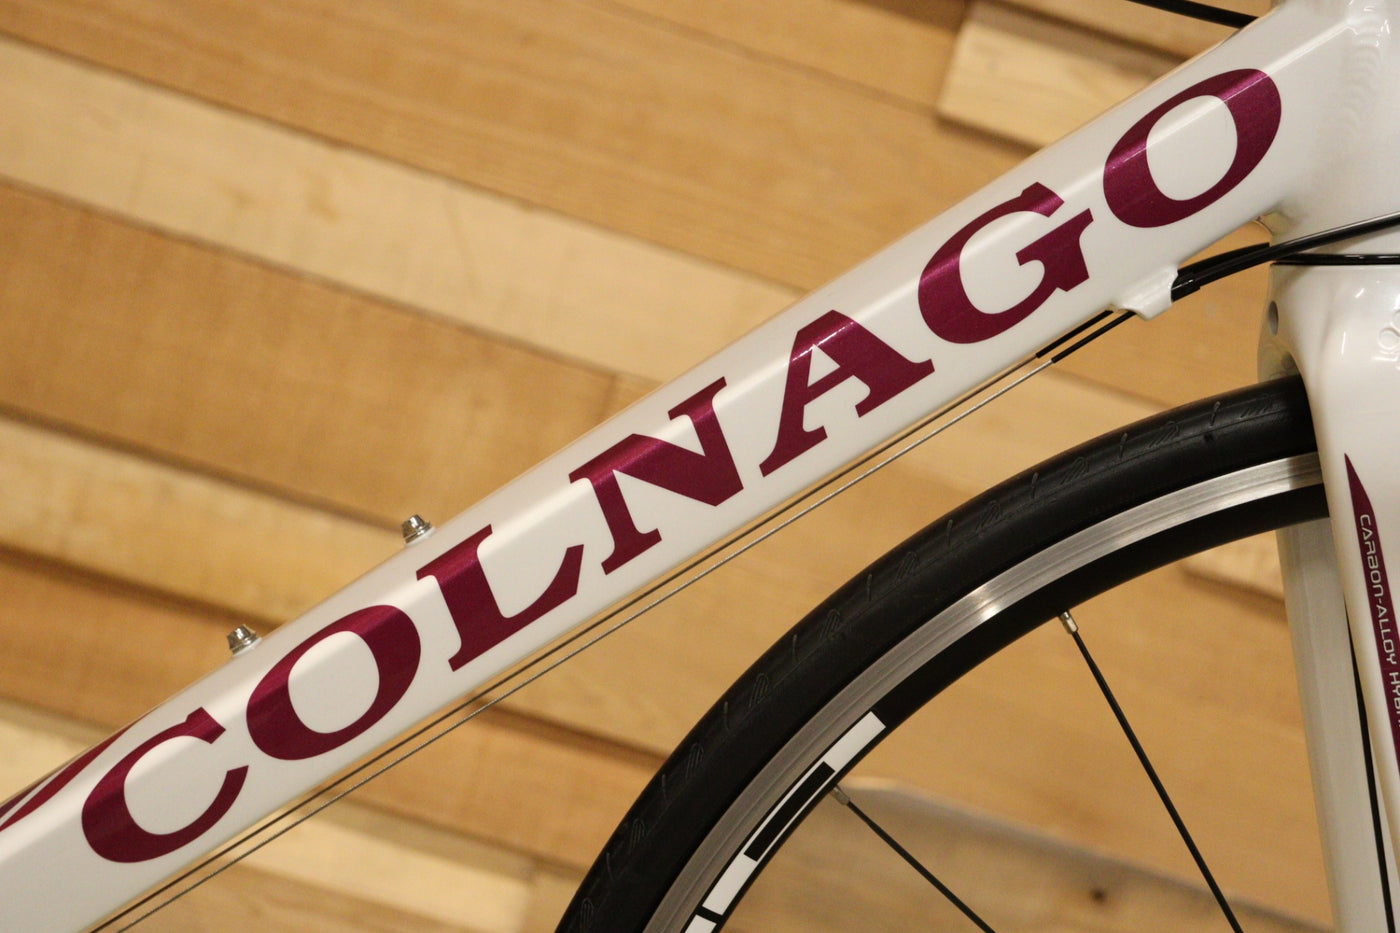 コルナゴ COLNAGO ムーヴ MOVE 2012モデル 450Sサイズ シマノ 105 5700 10S アルミ ロードバイク 【立川店】